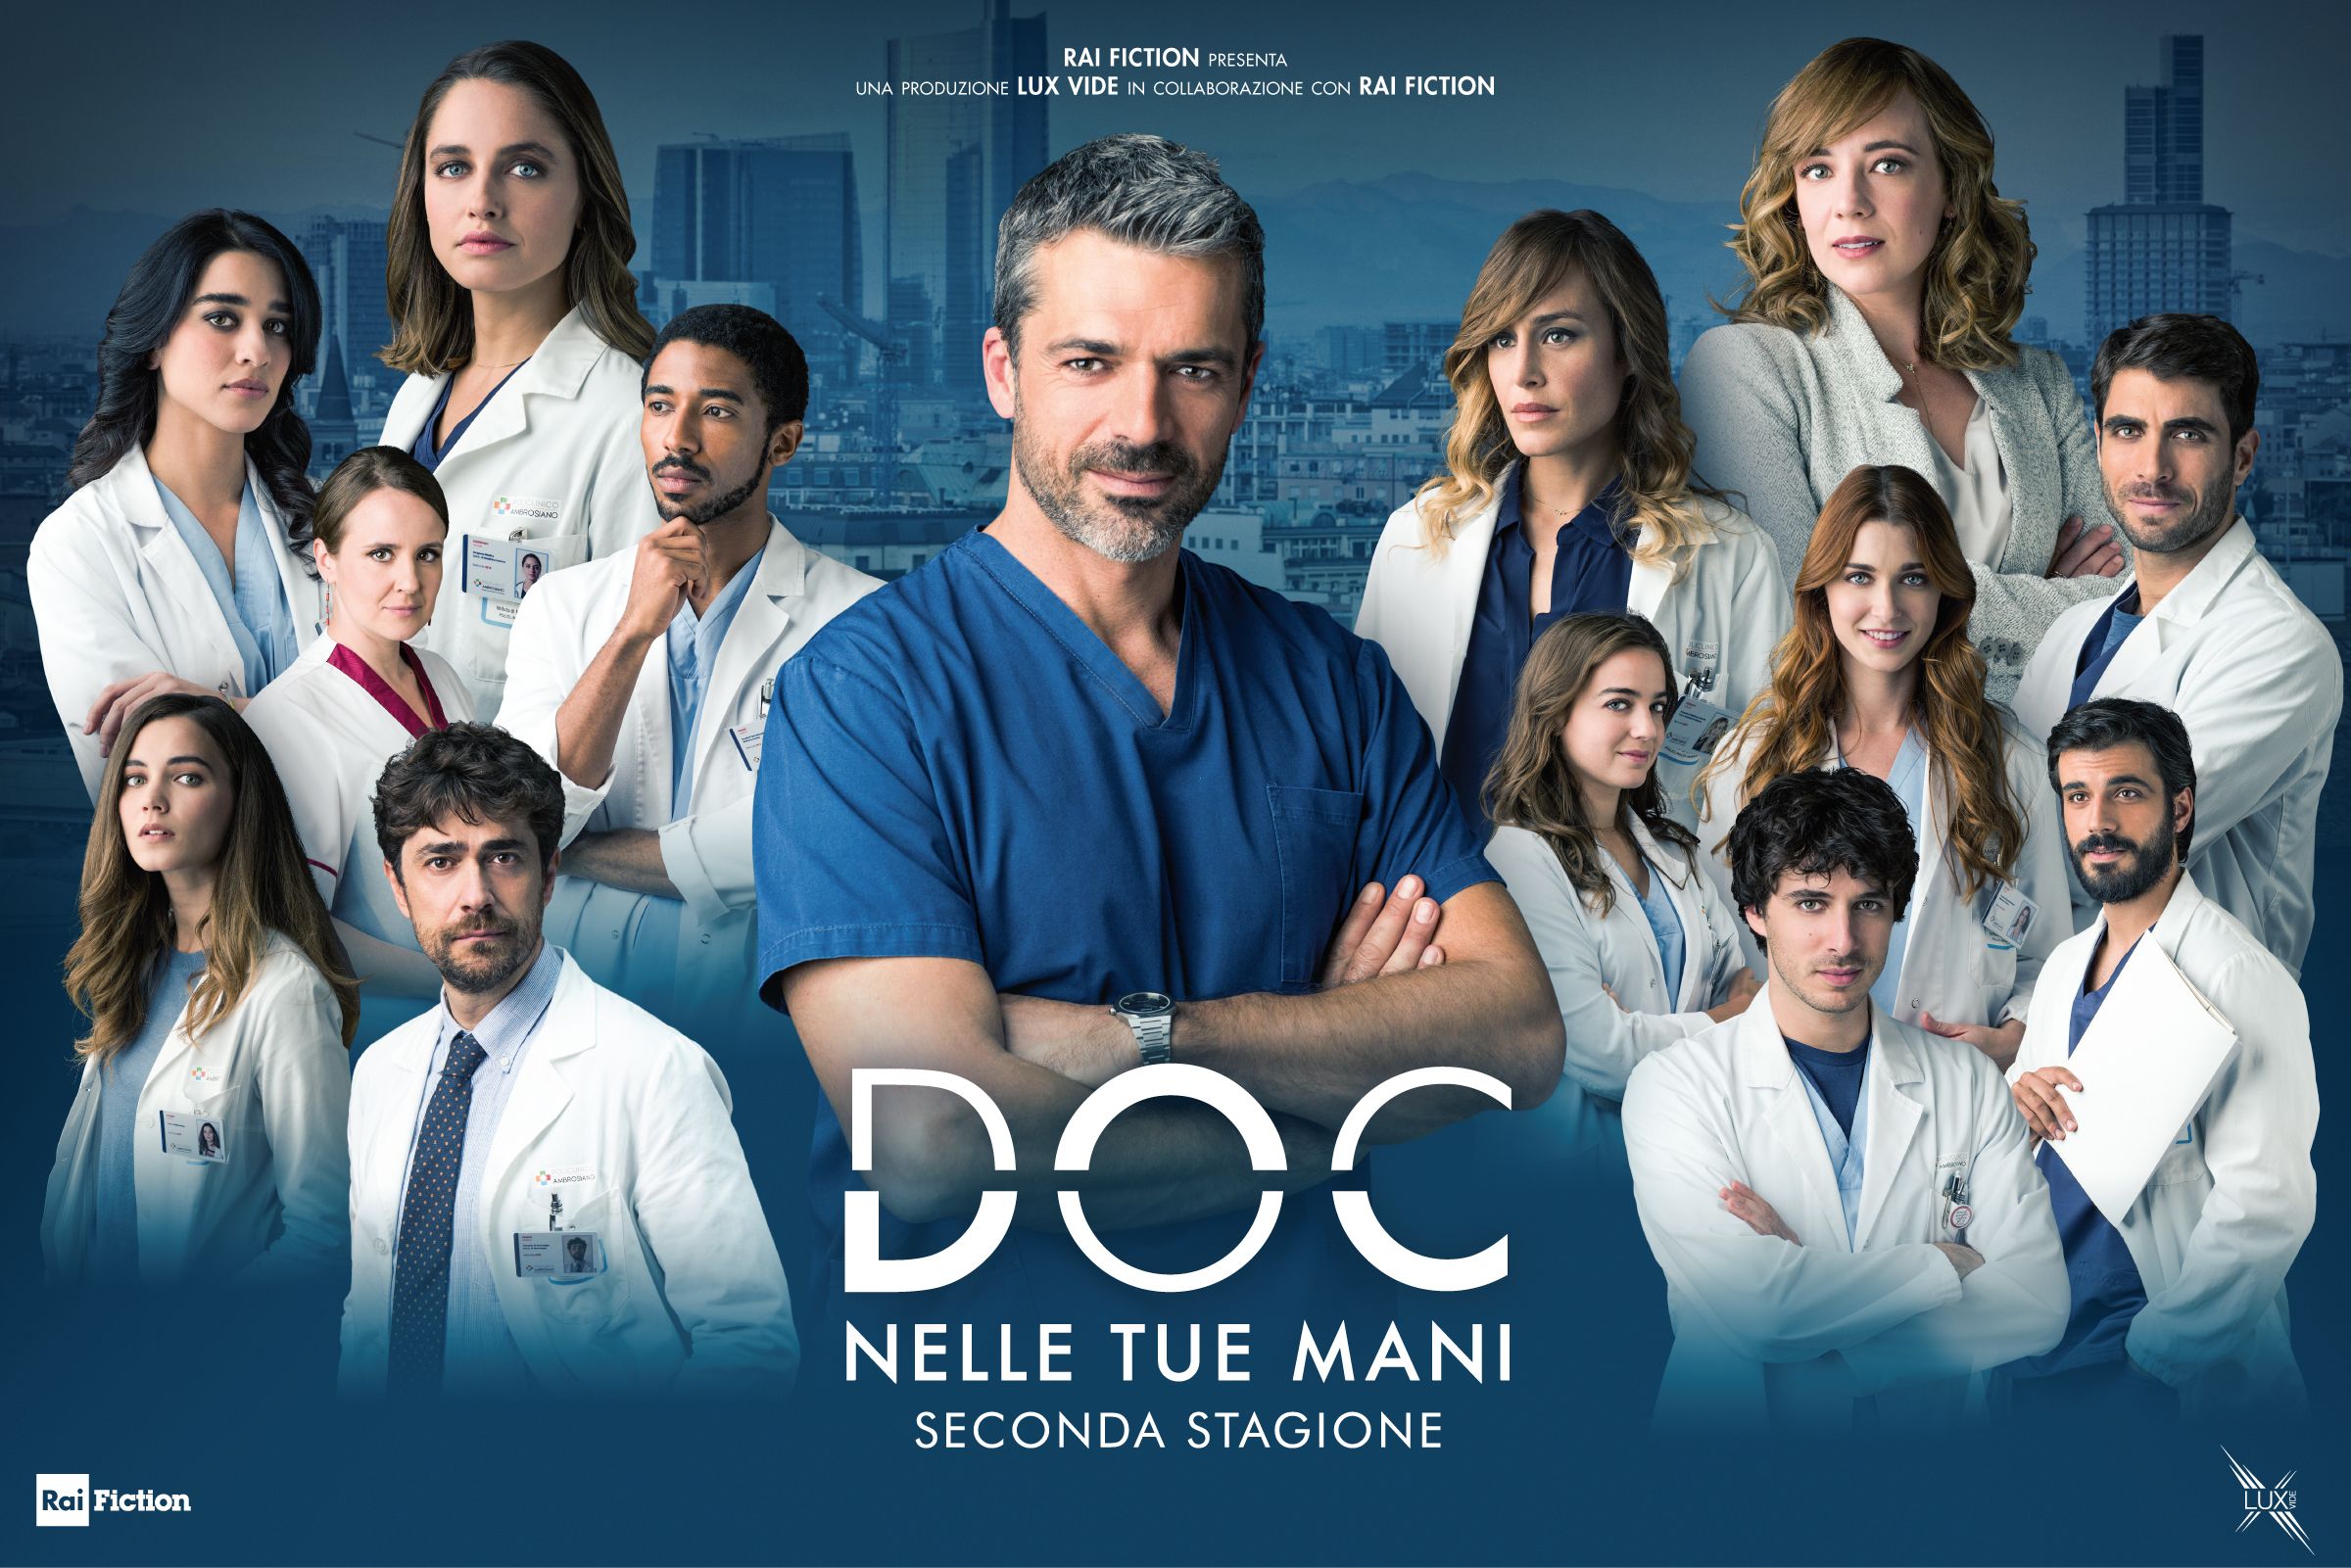 Serie tv Doc - Nelle tue mani - video